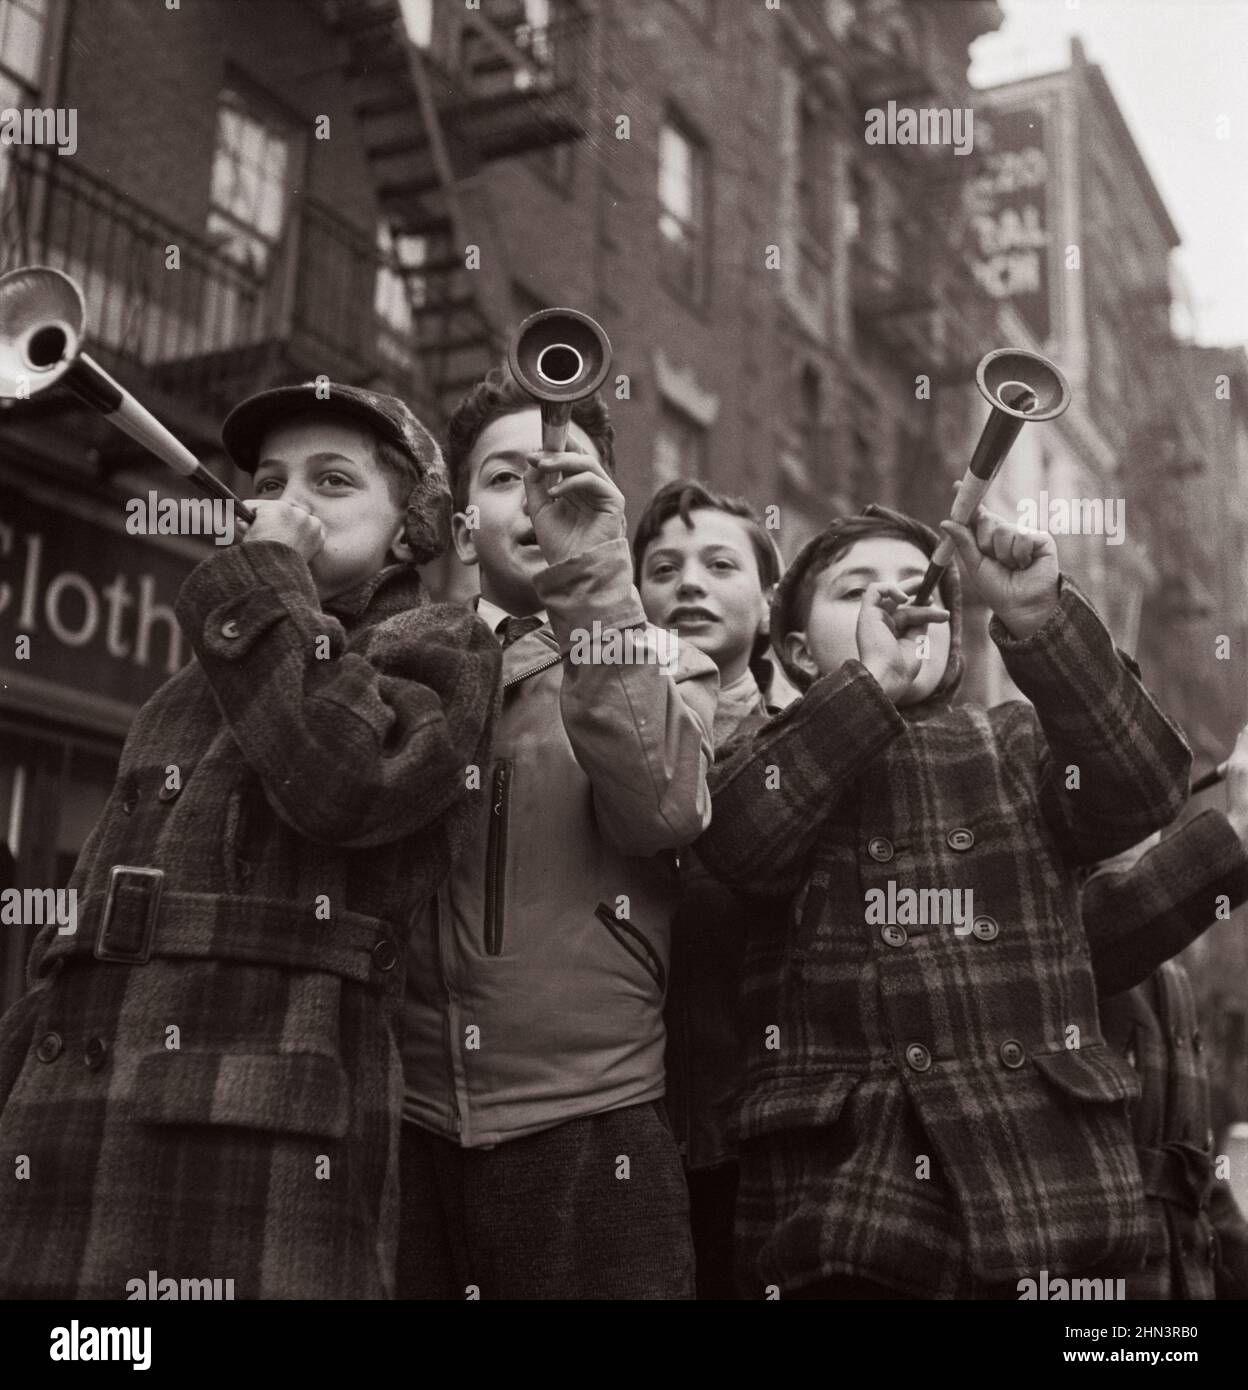 Vintage-Foto des amerikanischen Lebens im Jahr 1940s. Blashörner auf der Bleeker Street am Neujahrstag. New York. Foto von Marjory Collins, Januar 1943 Stockfoto